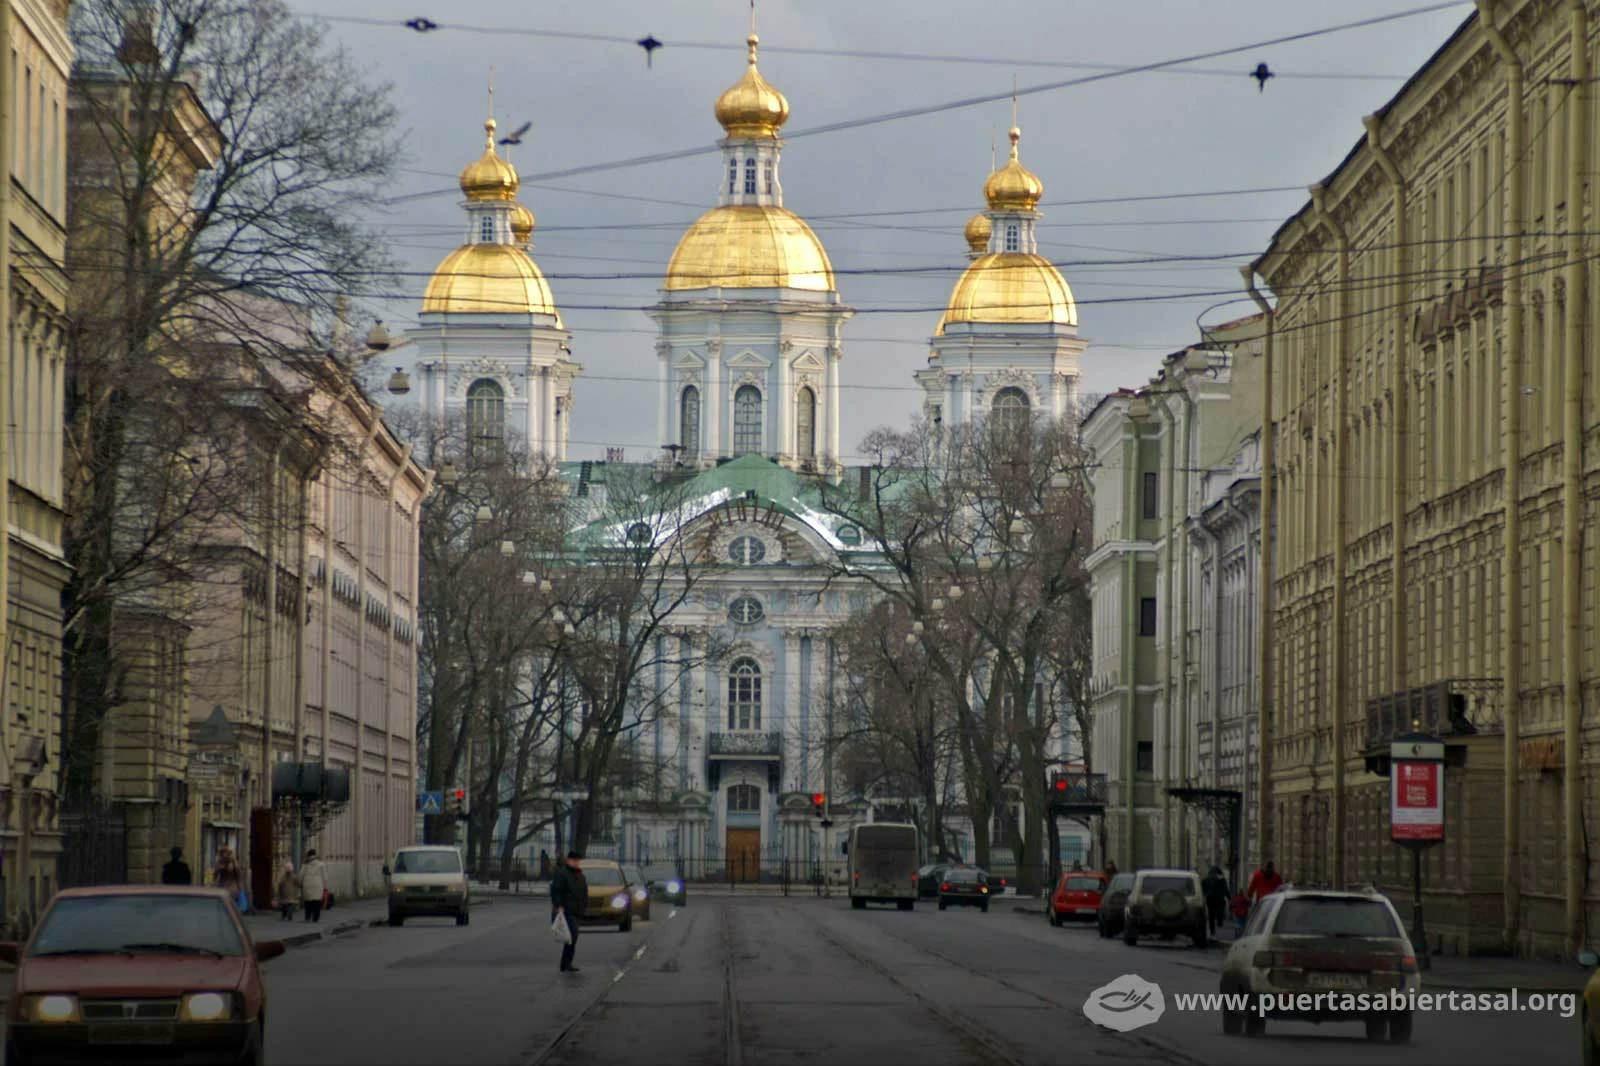 El gobierno continúa favoreciendo a la Iglesia Ortodoxa Rusa, a expensas de otros grupos religiosos cristianos